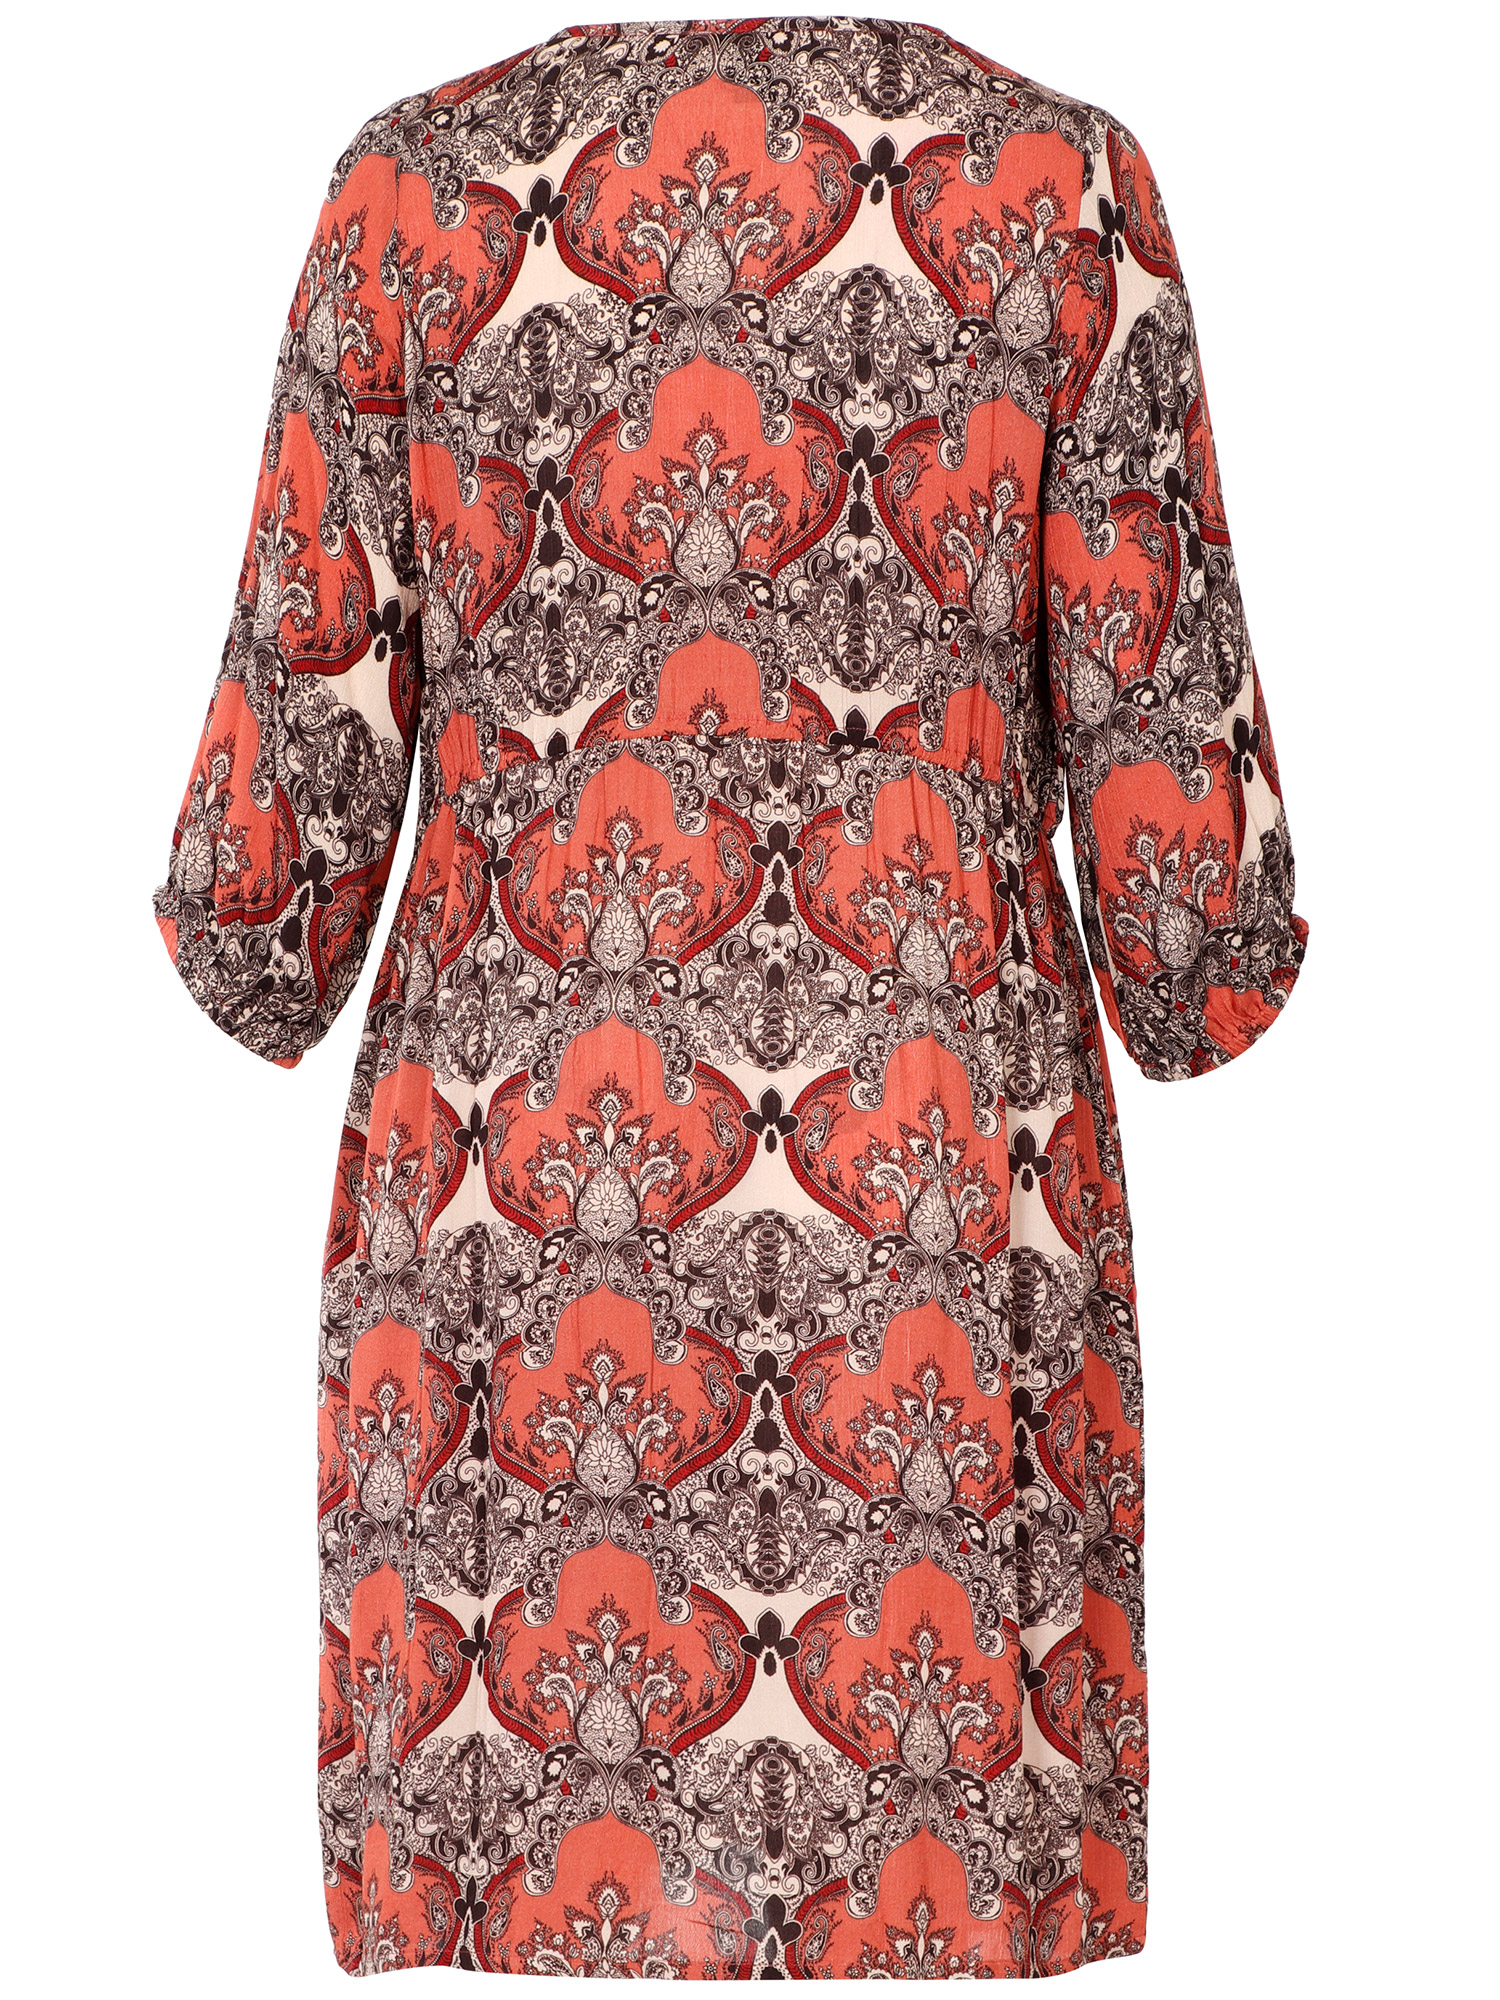 Skøn viskose skjorte kjole i smart print fra Adia